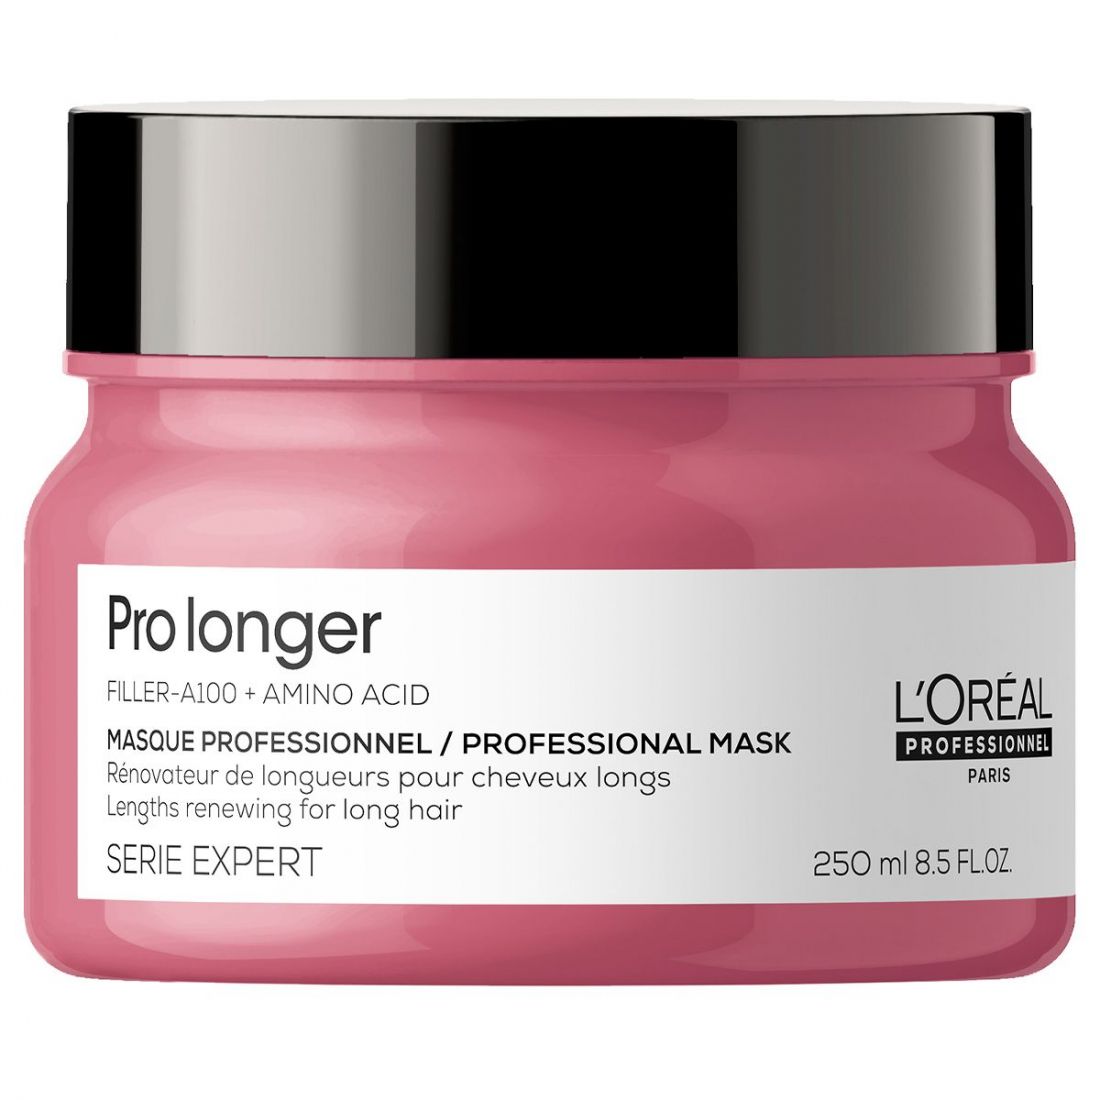 L'Oréal Professionnel Paris - Masque capillaire 'Pro Longer' - 250 ml